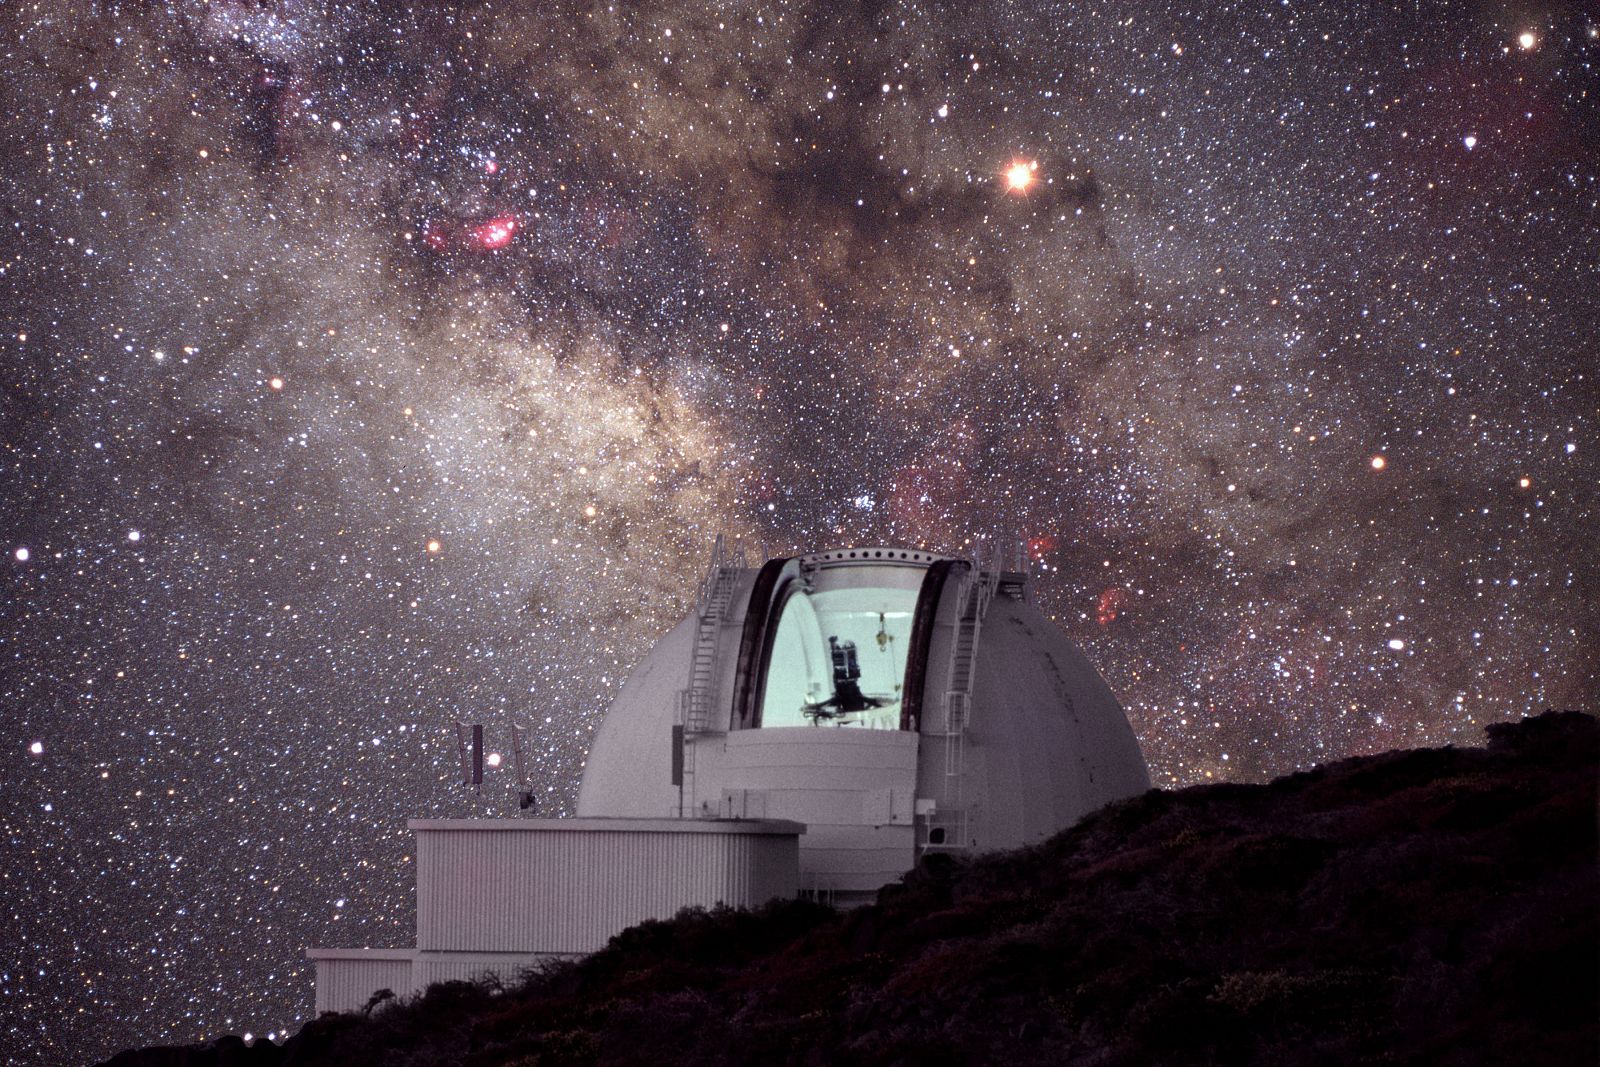 Imagen de larga exposición del Telescopio Isaac Newton (INT), situado en el Observatorio del Roque de los Muchachos (La Palma), con la Vía Láctea y el cielo estrellado